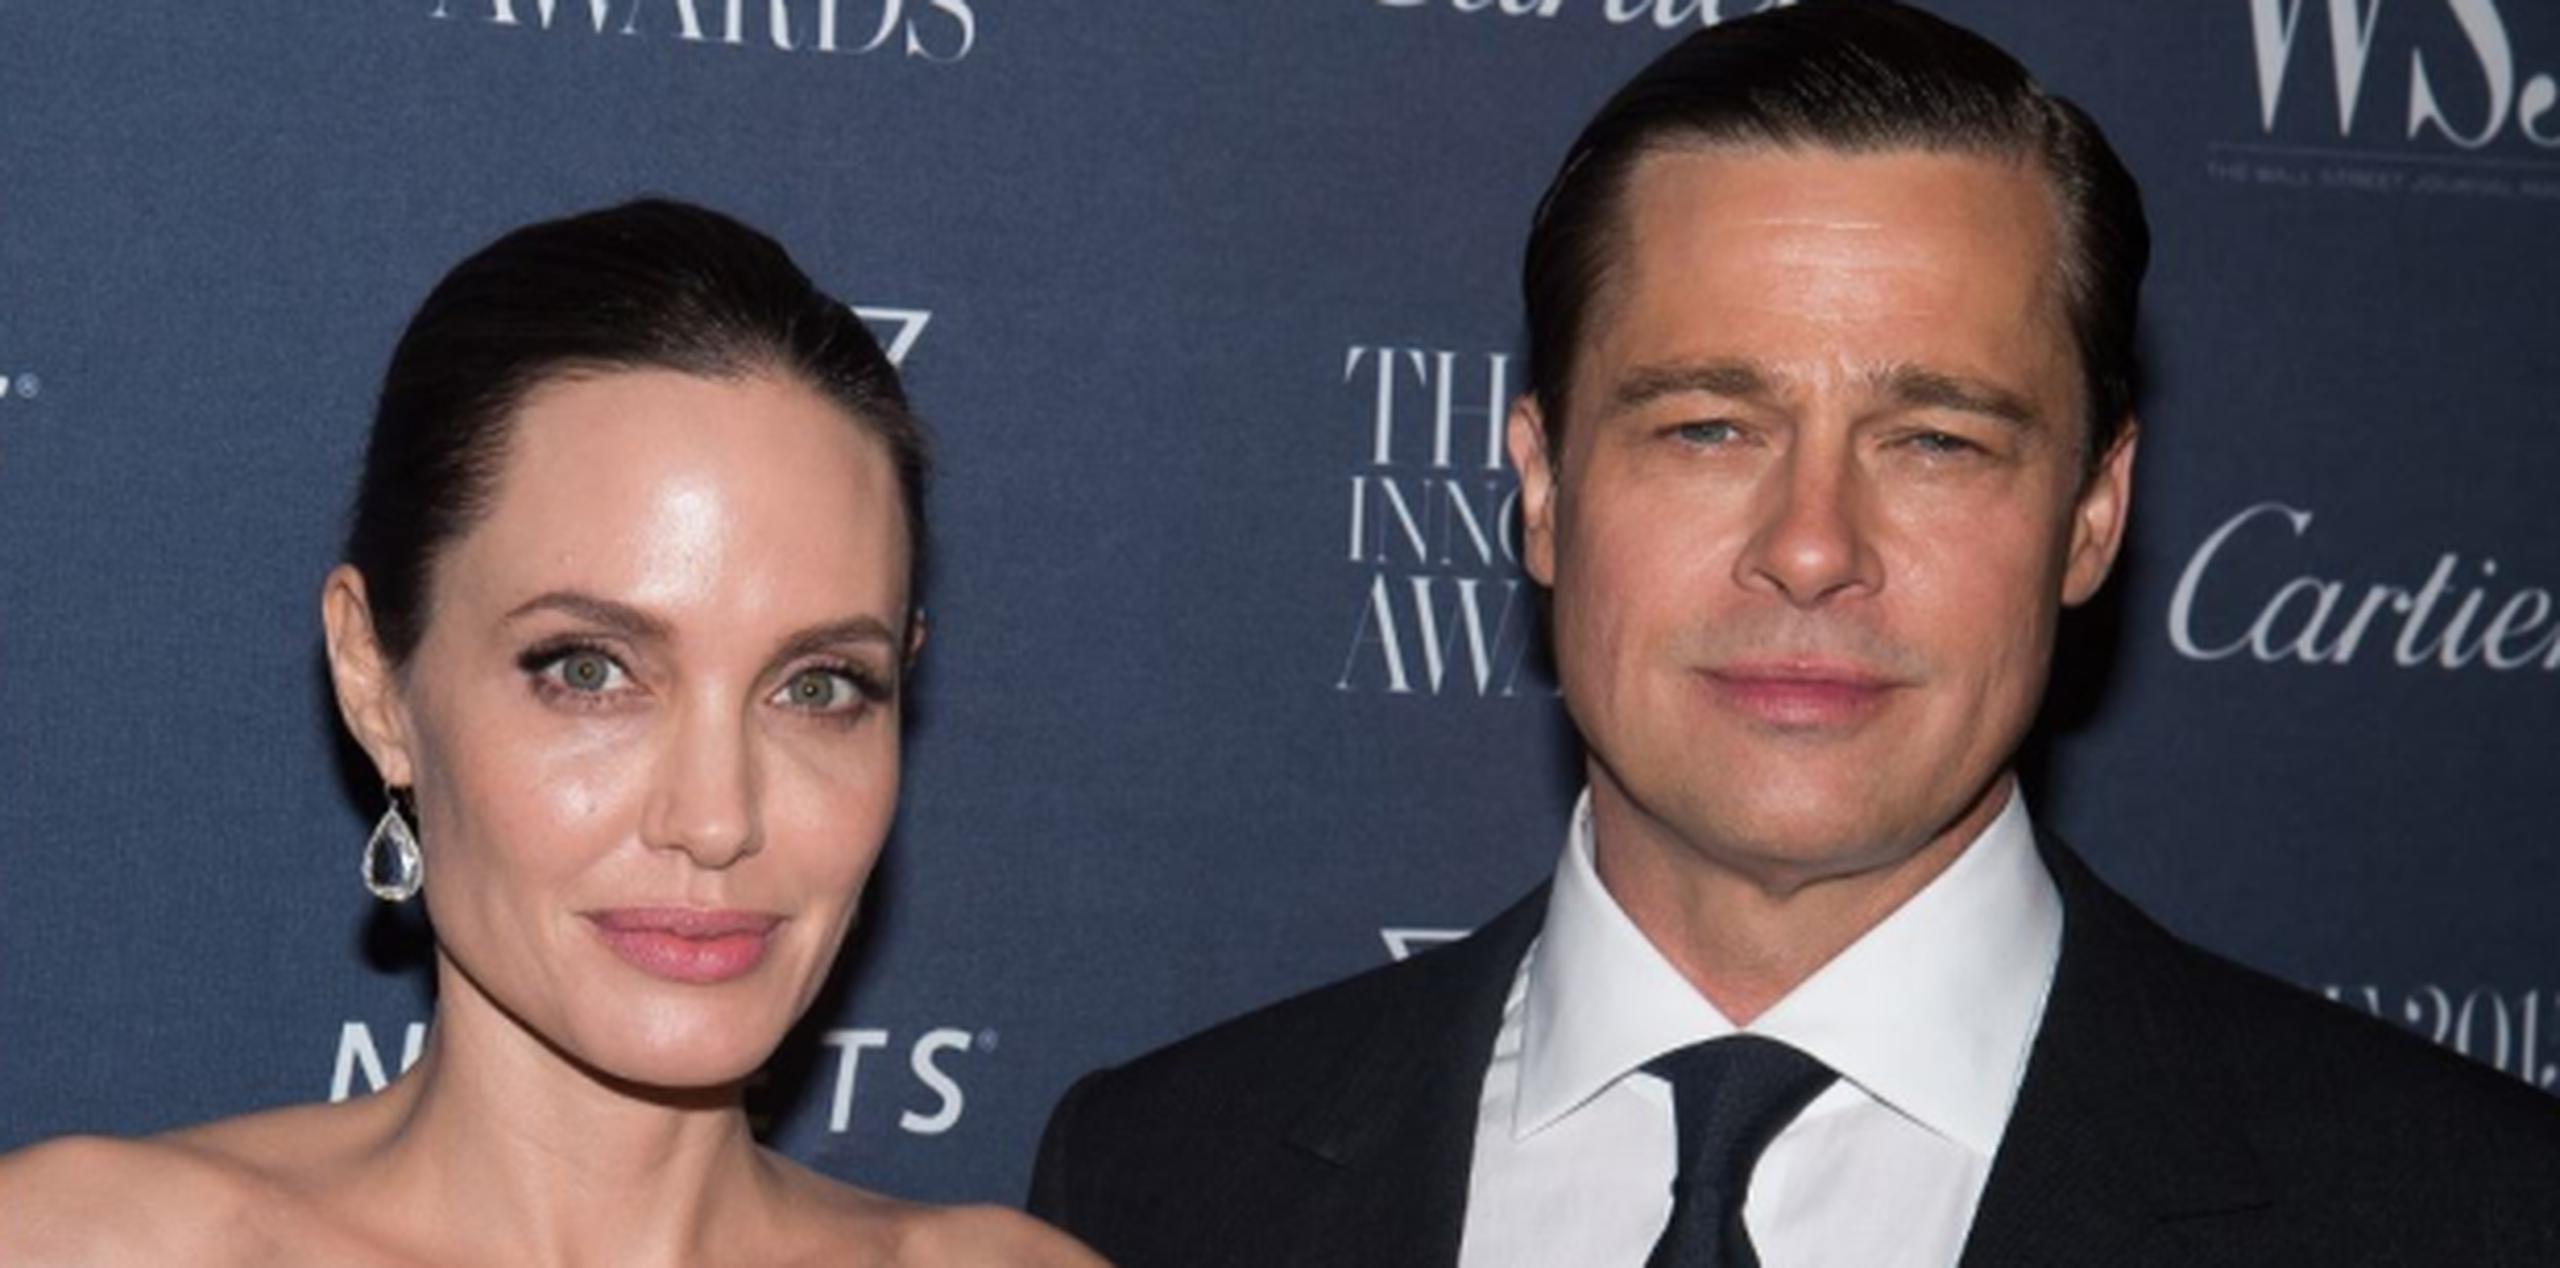 Jolie solicitó el divorcio de Brad Pitt el pasado 19 de septiembre, alegando "diferencias irreconciliables". (Archivo)